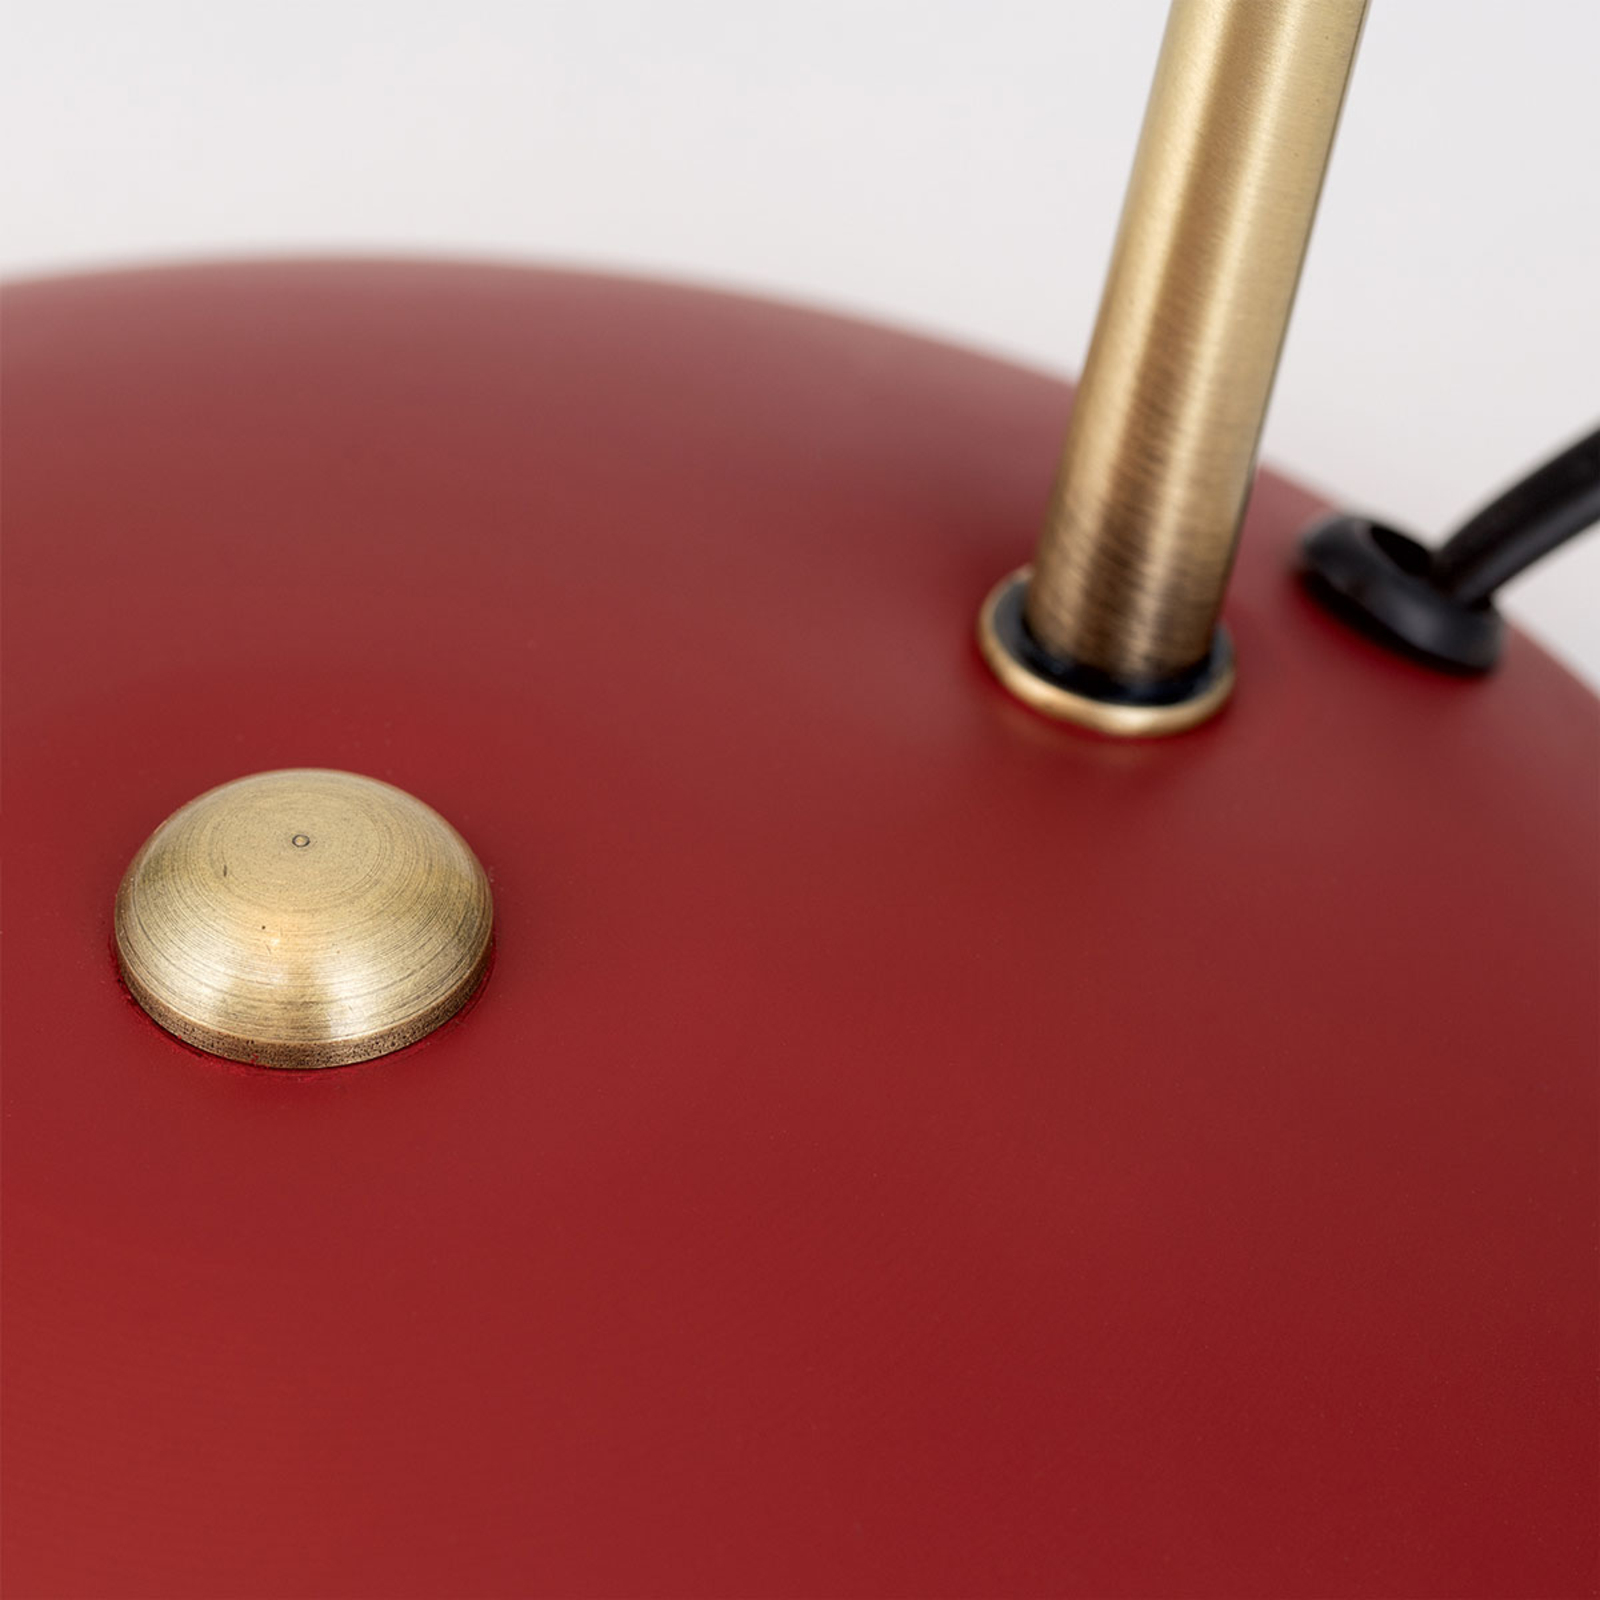 Ve vzhledu vintage - stolní lampa Fedra červená